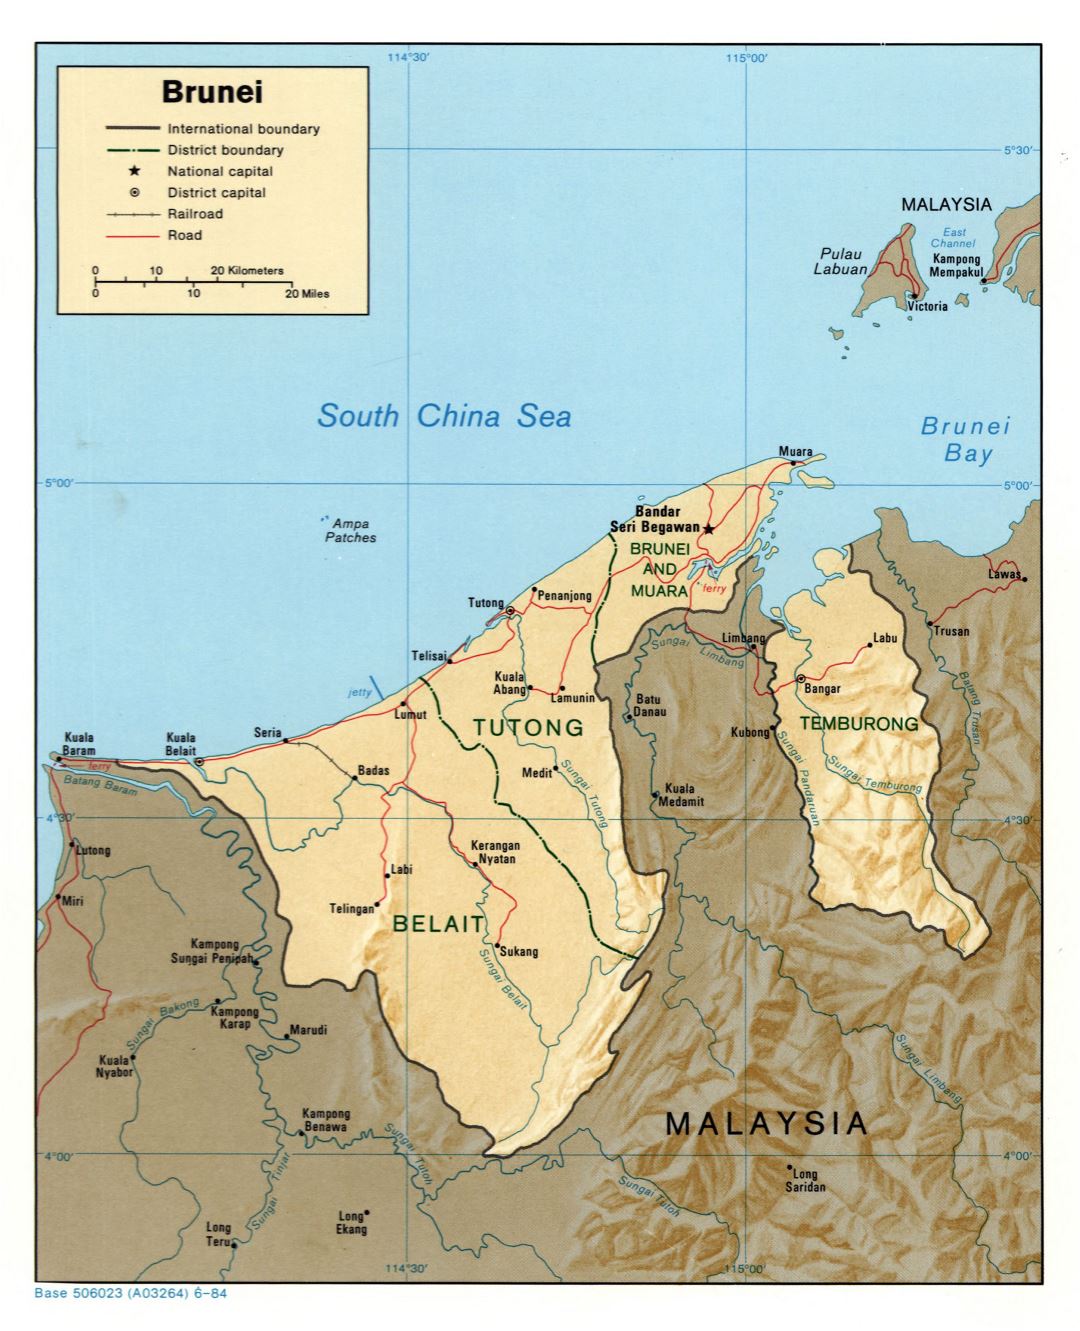 Grande detallado mapa político y administrativo de Brunei con carreteras, socorro, ferrocarriles y principales ciudades - 1984